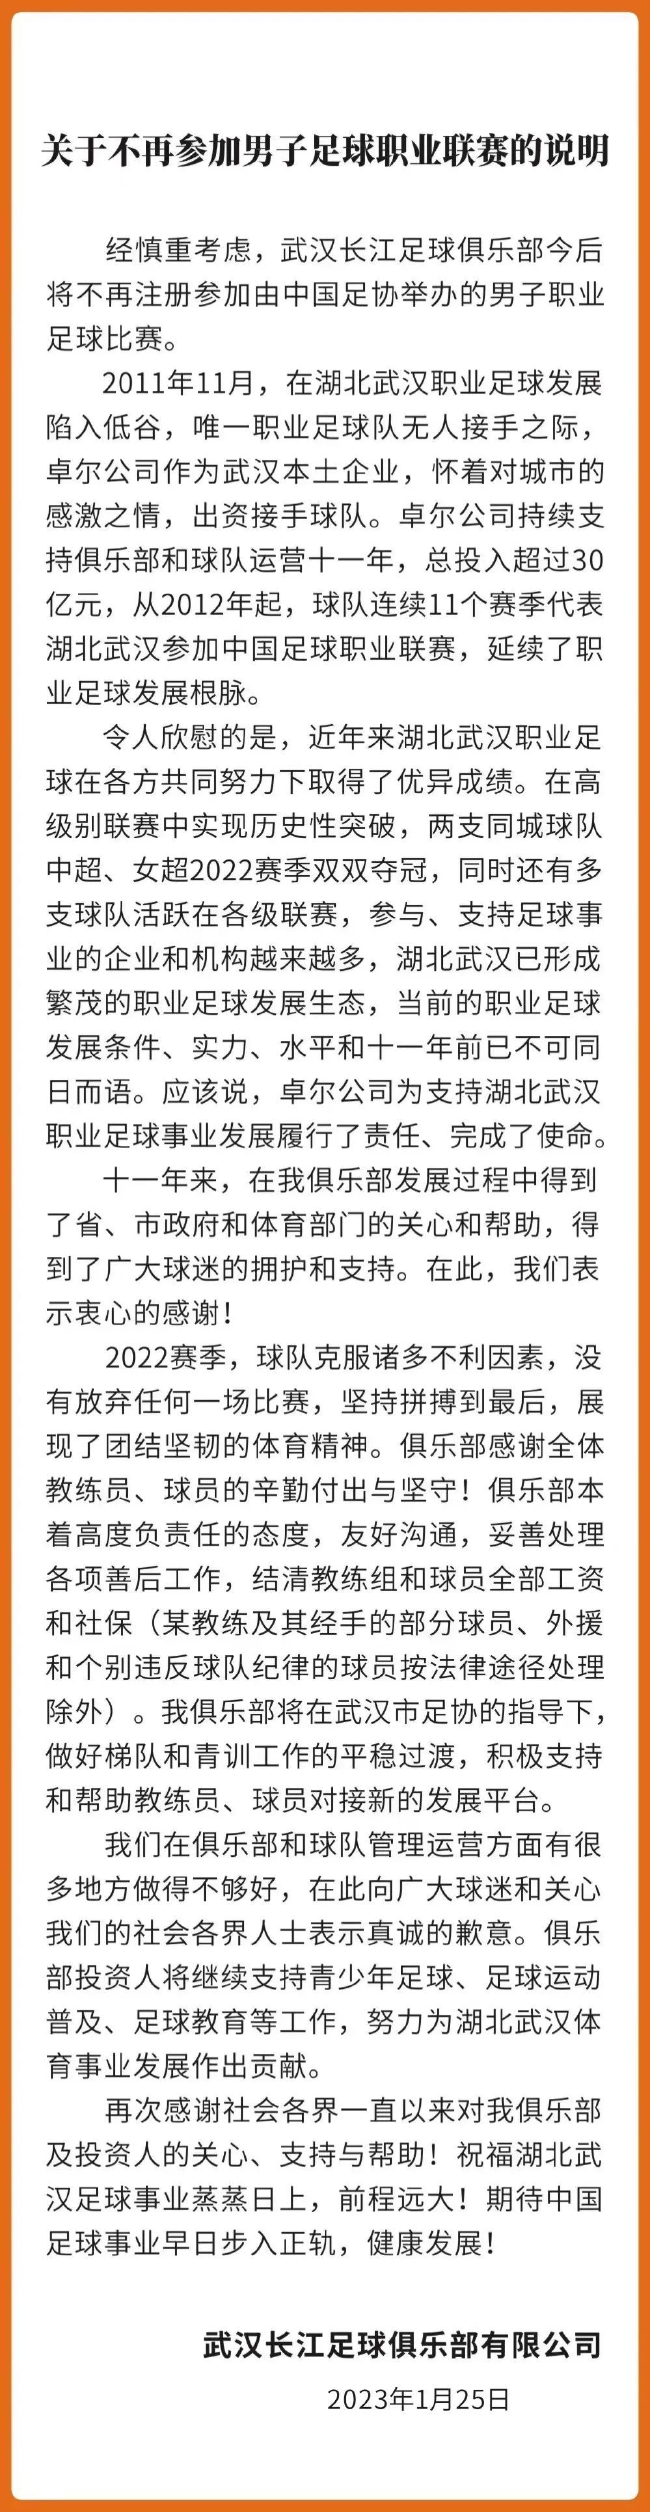 武汉长江足球俱乐部宣告开幕